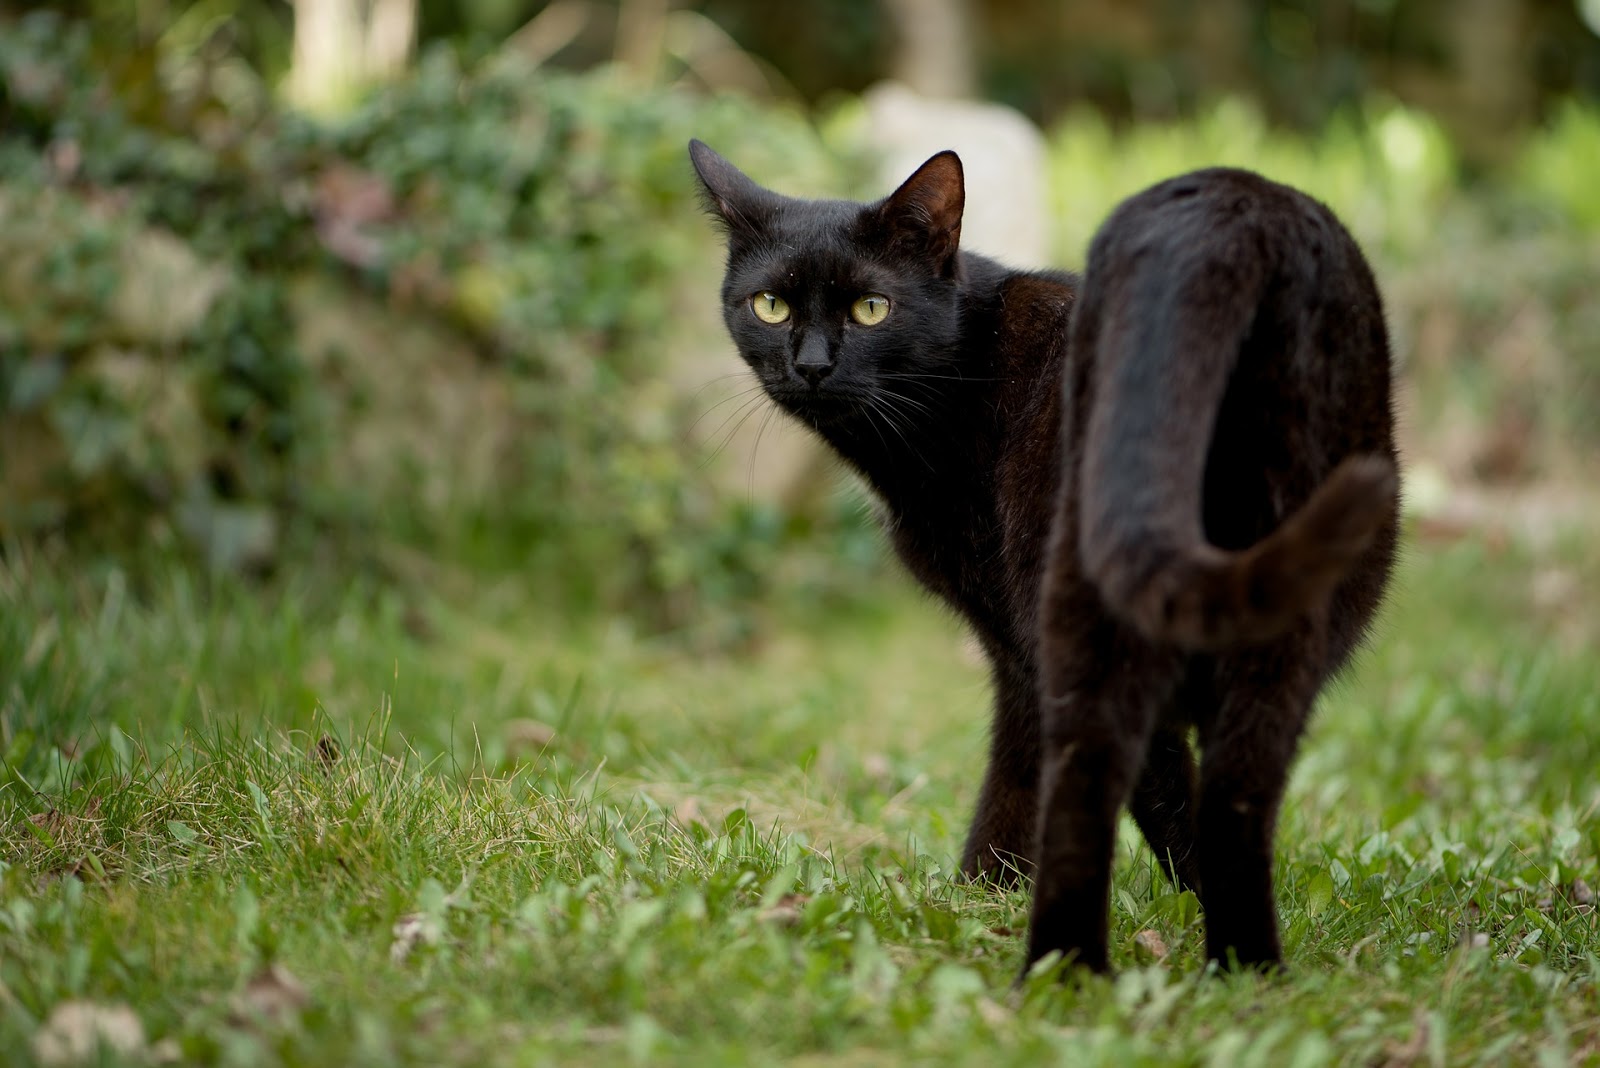 Black cat a mafarki